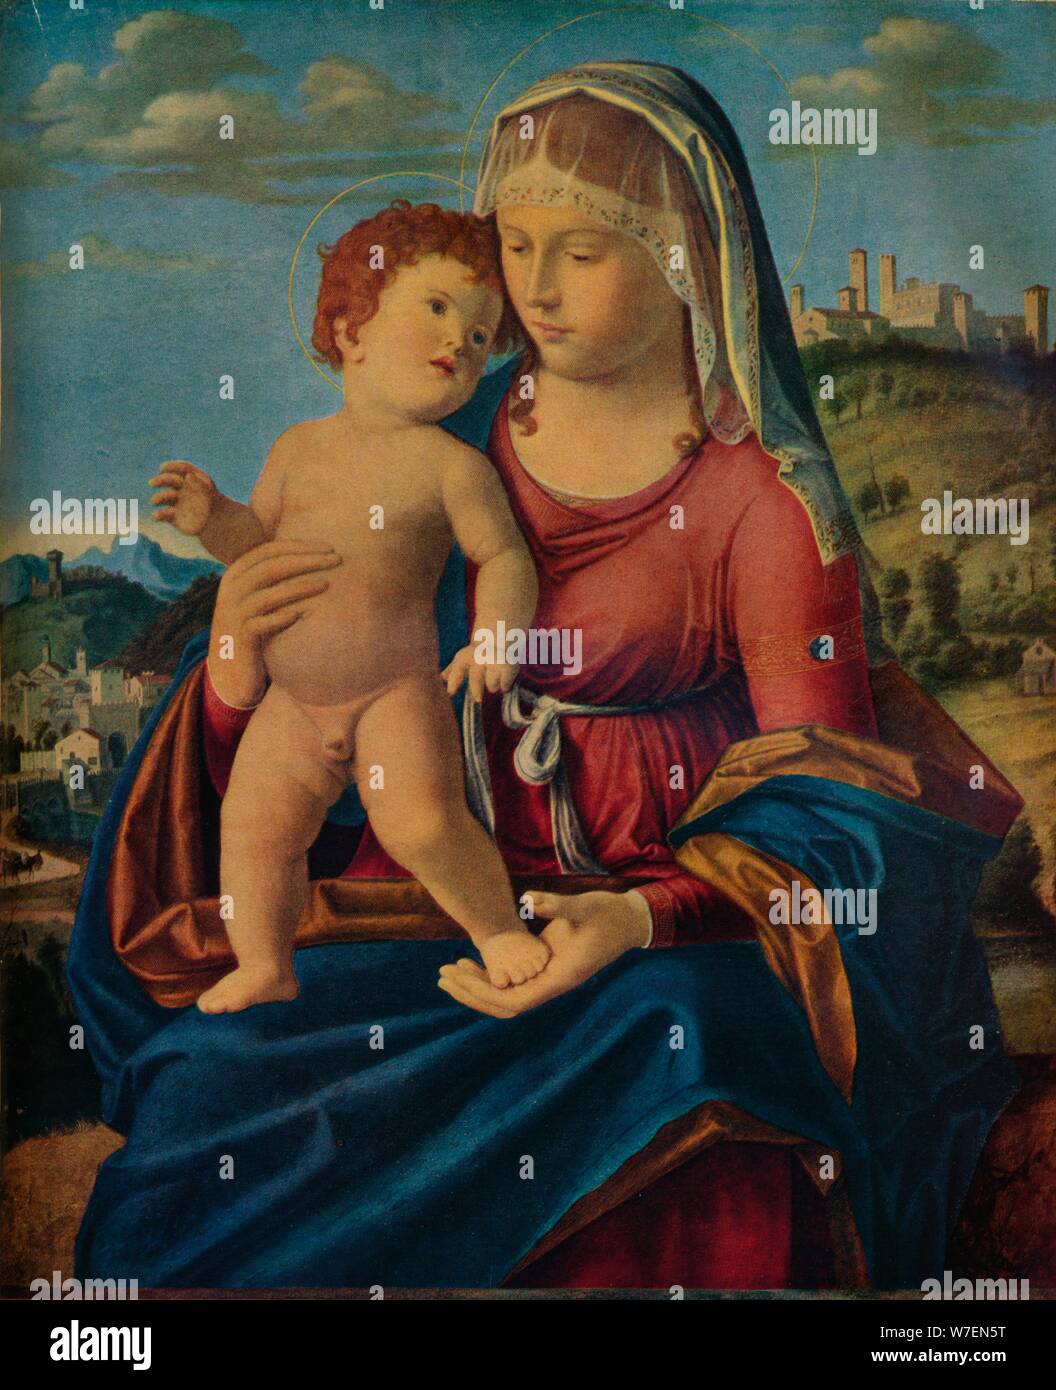 'The Virgin and Child', c1496-9. Creator: Giovanni Battista Cima da Conegliano. Stock Photo